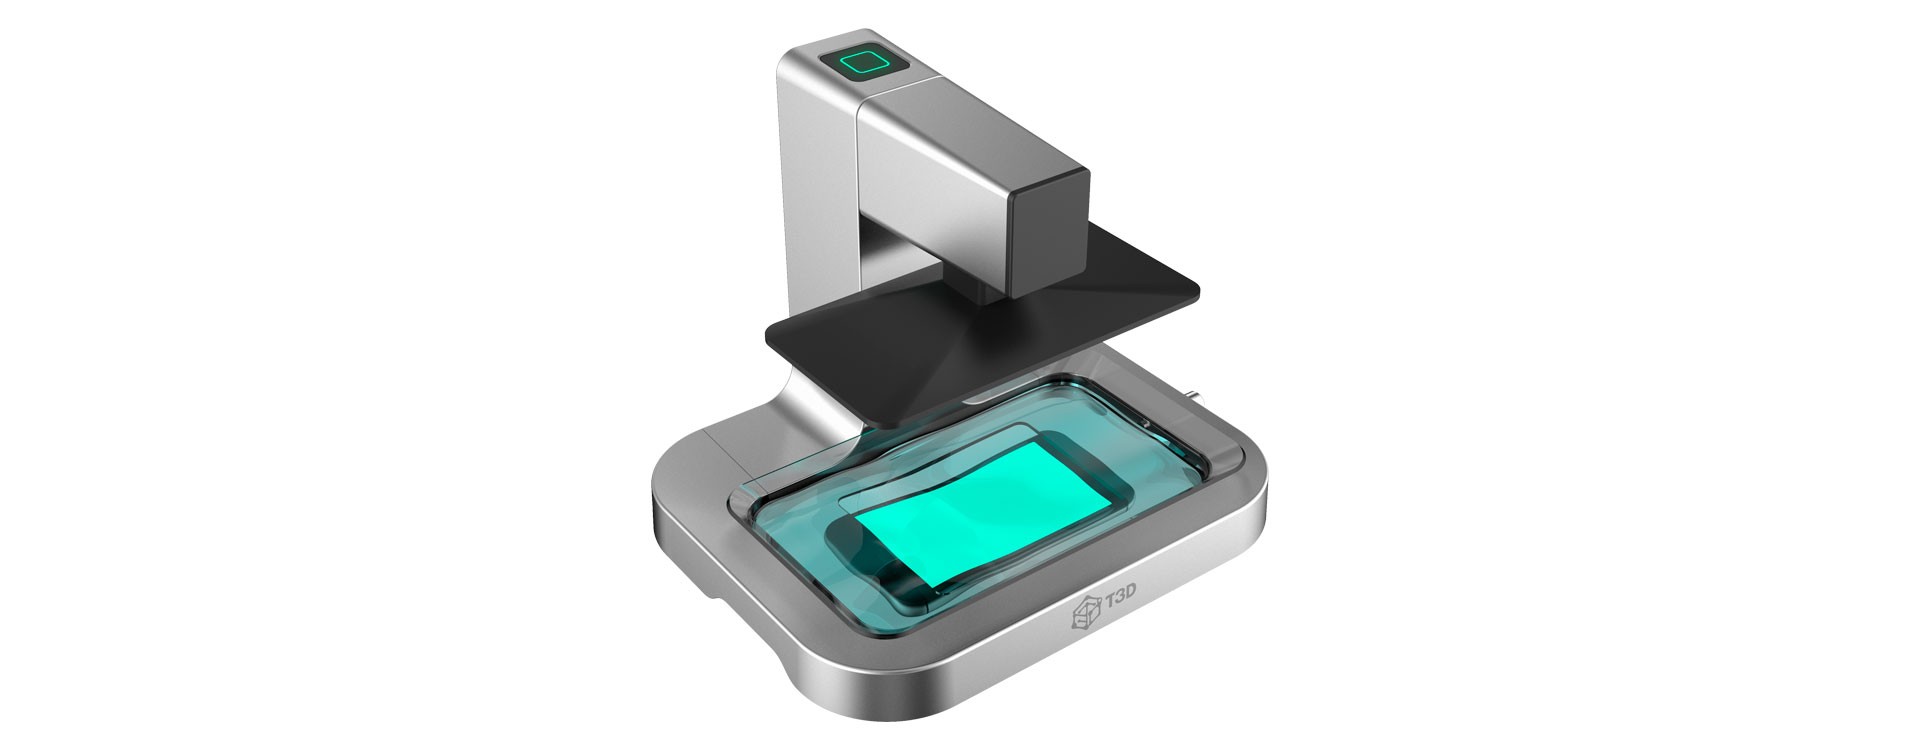 T3D - 3D принтер-смартфон: реальна пропозиція або черговий ONO (OLO)?